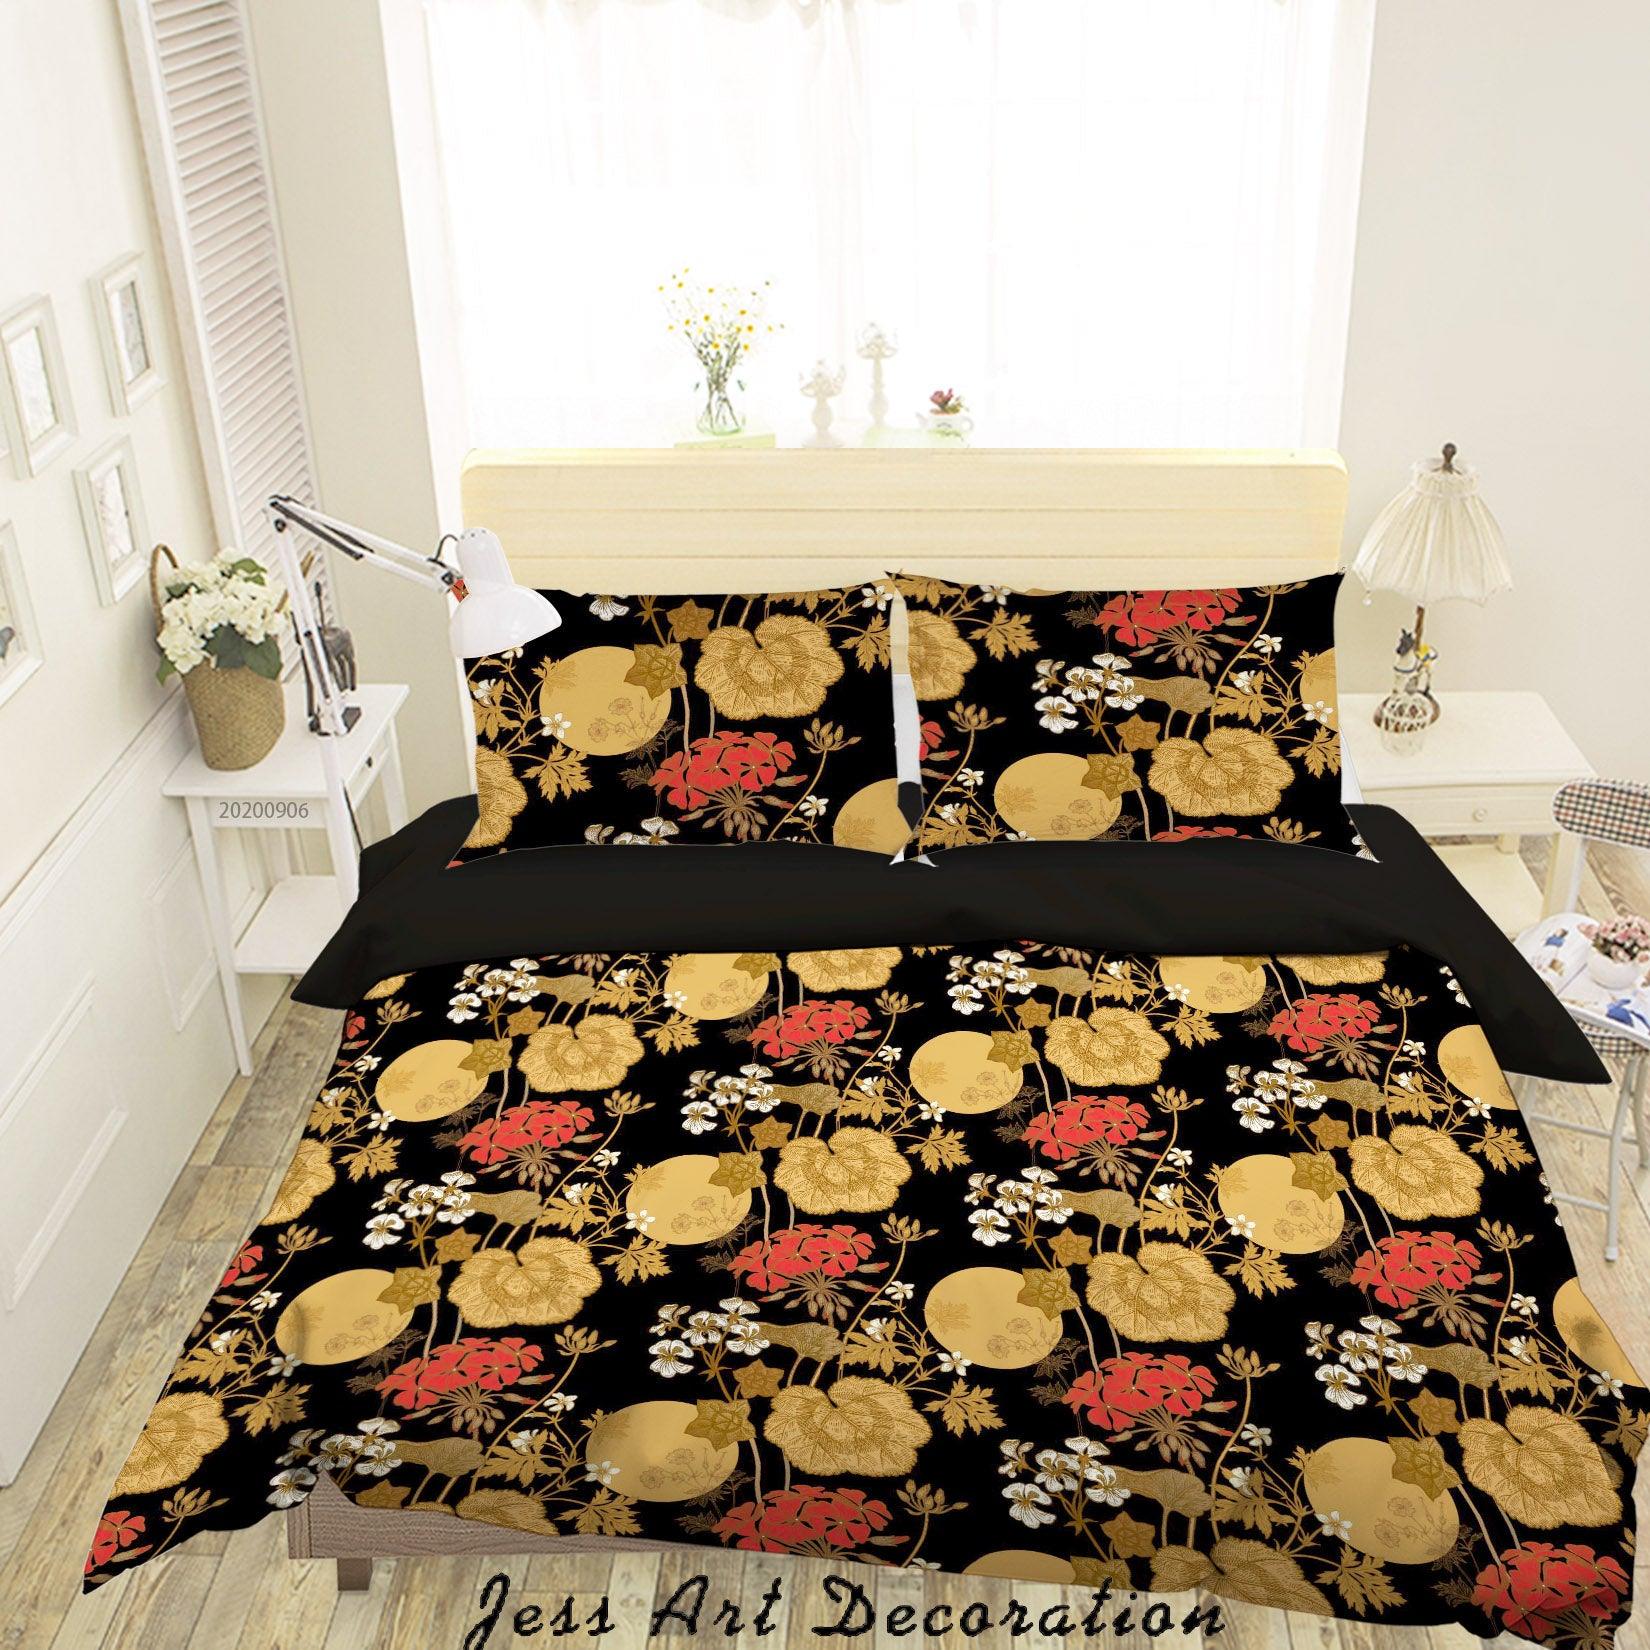 3D Vintage Leaves Floral Pattern Quilt Cover Set Bedding Set Duvet Cover Pillowcases WJ 3633- Jess Art Decoration